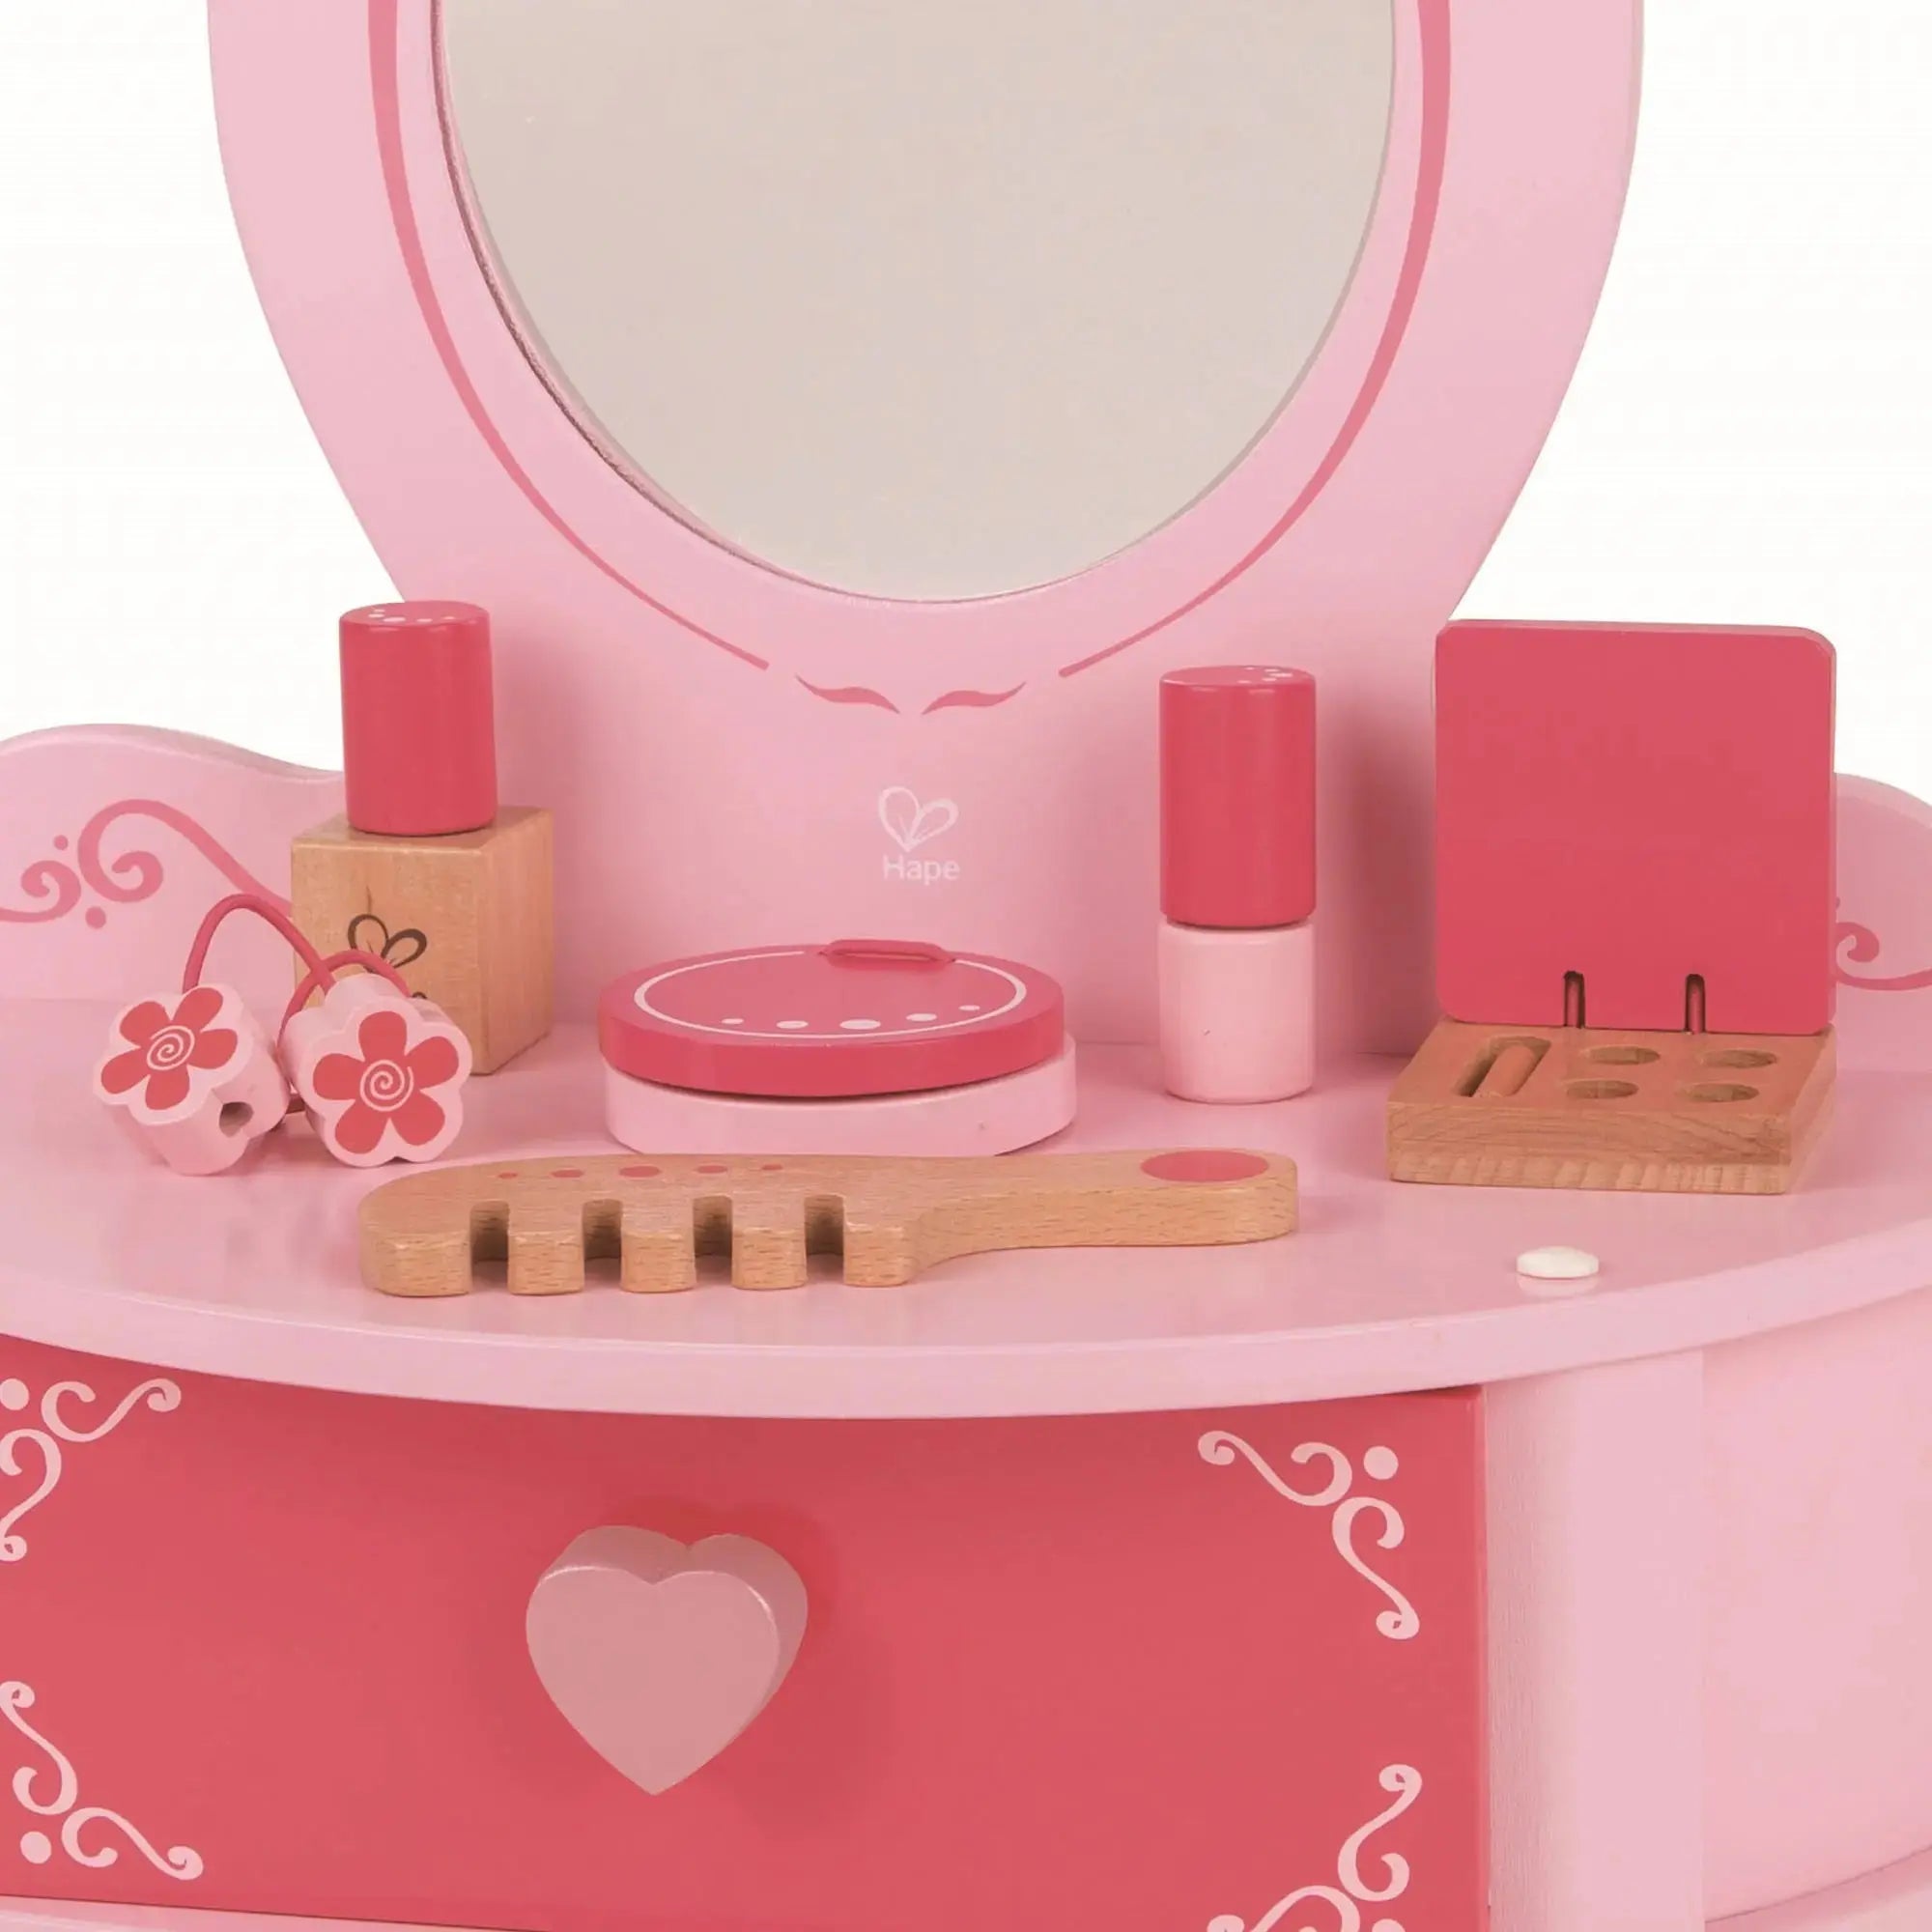 Toys for Girls,Kids Makeup Kit for Girl,Toddler Vanity Makeup Set with  Lights,Sound,Kids